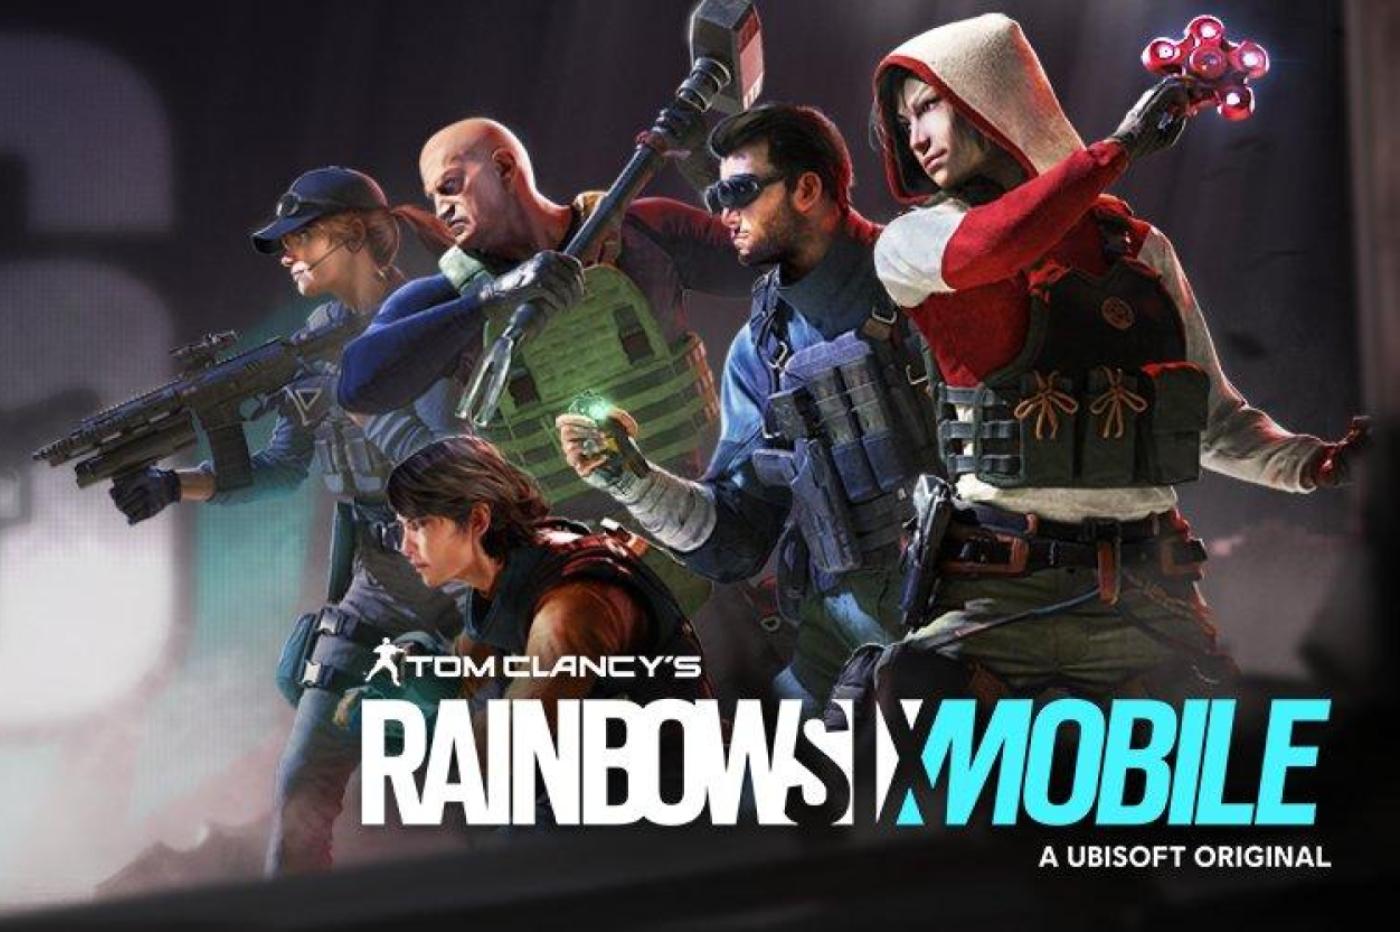 Когда вышла rainbow six. Rainbow 6 mobile. Раинбов сикс мобайл. Rainbow Six Monile. Rainbow Six Siege mobile.